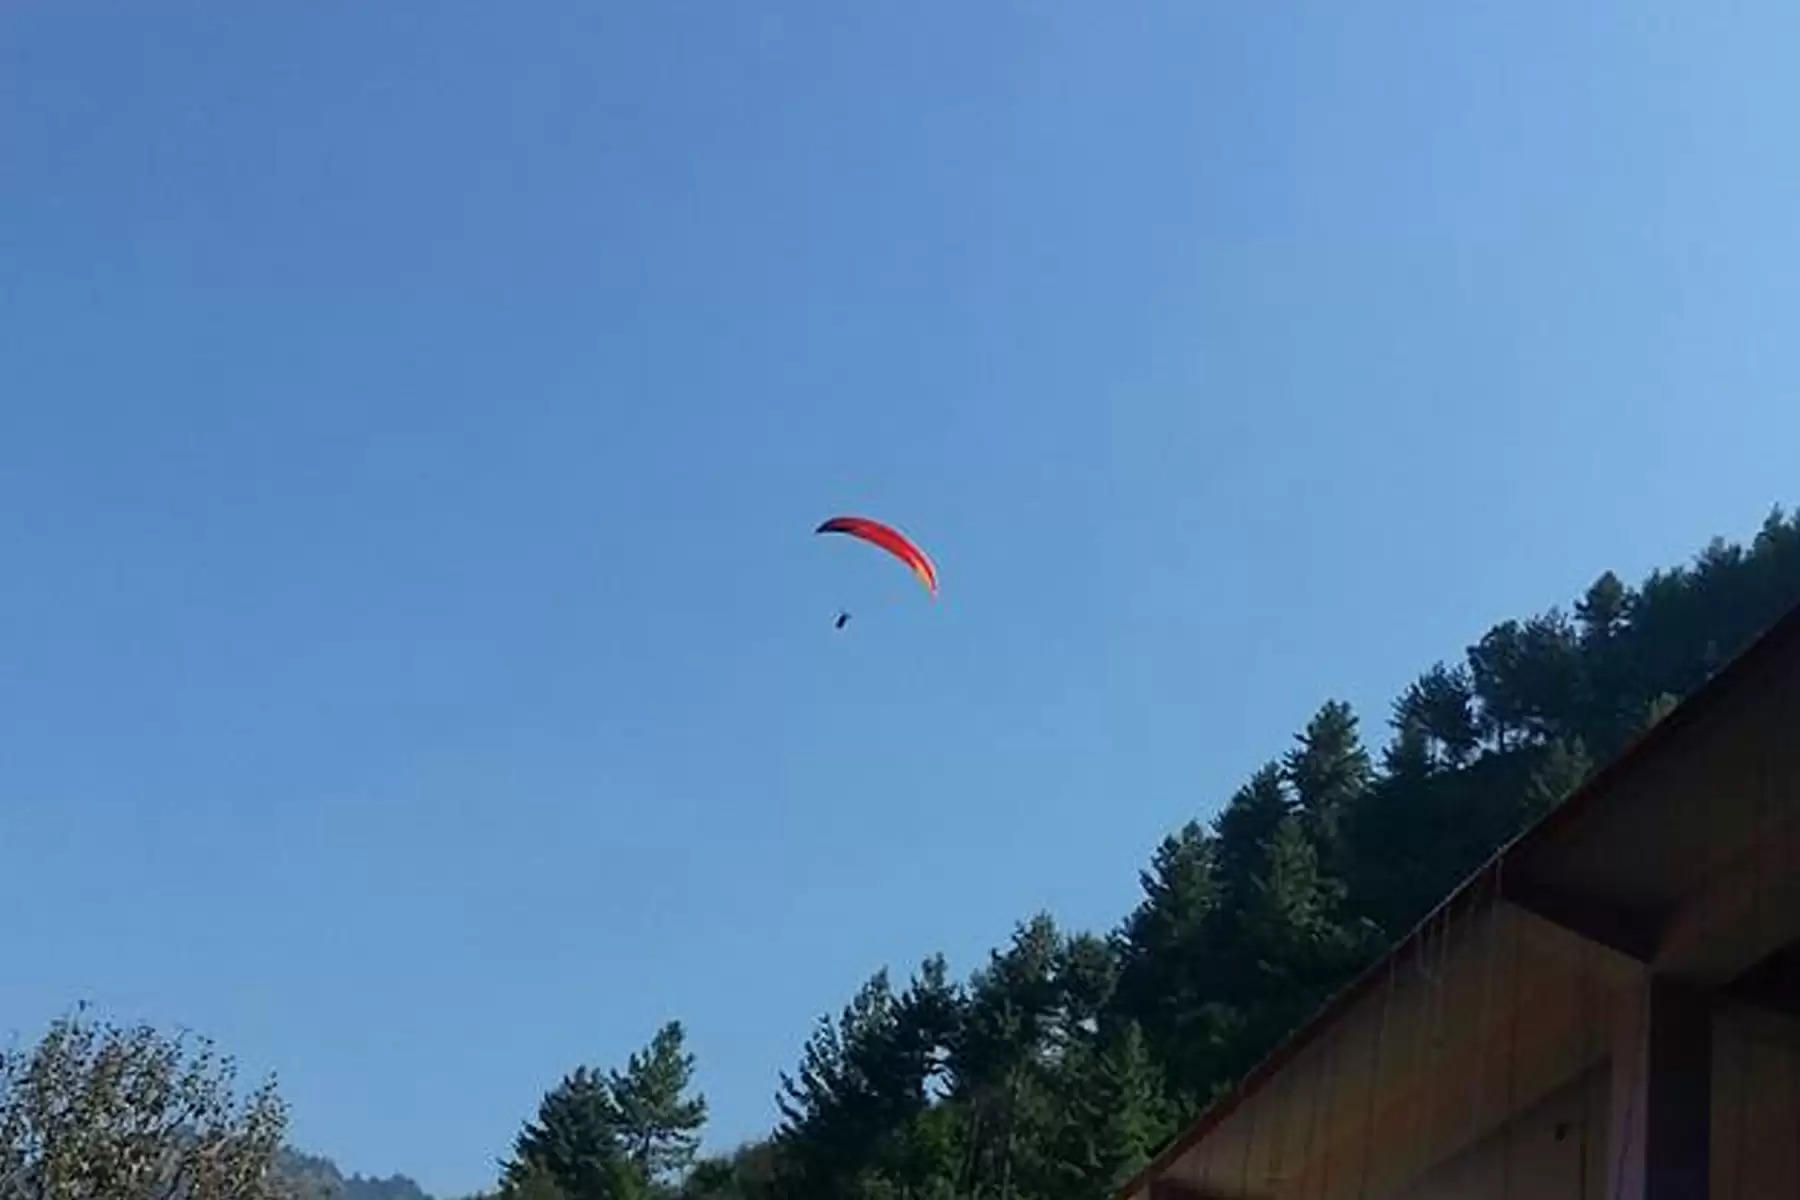 Gadsa Paragliding Site हिमाचल प्रदेश के जिला कुल्लू में पैराग्लाइडिंग साइट को तत्काल प्रभाव से बंद कर दिया है। यह पैराग्लाइडिंग साइट कुल्लू जिले के गड़सा में चल रही थी। बताया जा रहा था कि साइट पर एयरो स्पोर्ट्स निमयों का ताक पर रखा जा रहा था। पैराग्लाइडिंग करवाने वाले ऑपरेटरों को कई बार व्यवस्था सुधारने के लिए पर्यटन विभाग ने कहा, लेकिन कोई सुधार नहीं किया गया। इसके बाद रेगुलेटरी कमेटी के अध्यक्ष एवं उपायुक्त कुल्लू आशुतोष गर्ग ने पैराग्लाइडिंग साइट बंद करने के आदेश जारी कर दिए हैं।